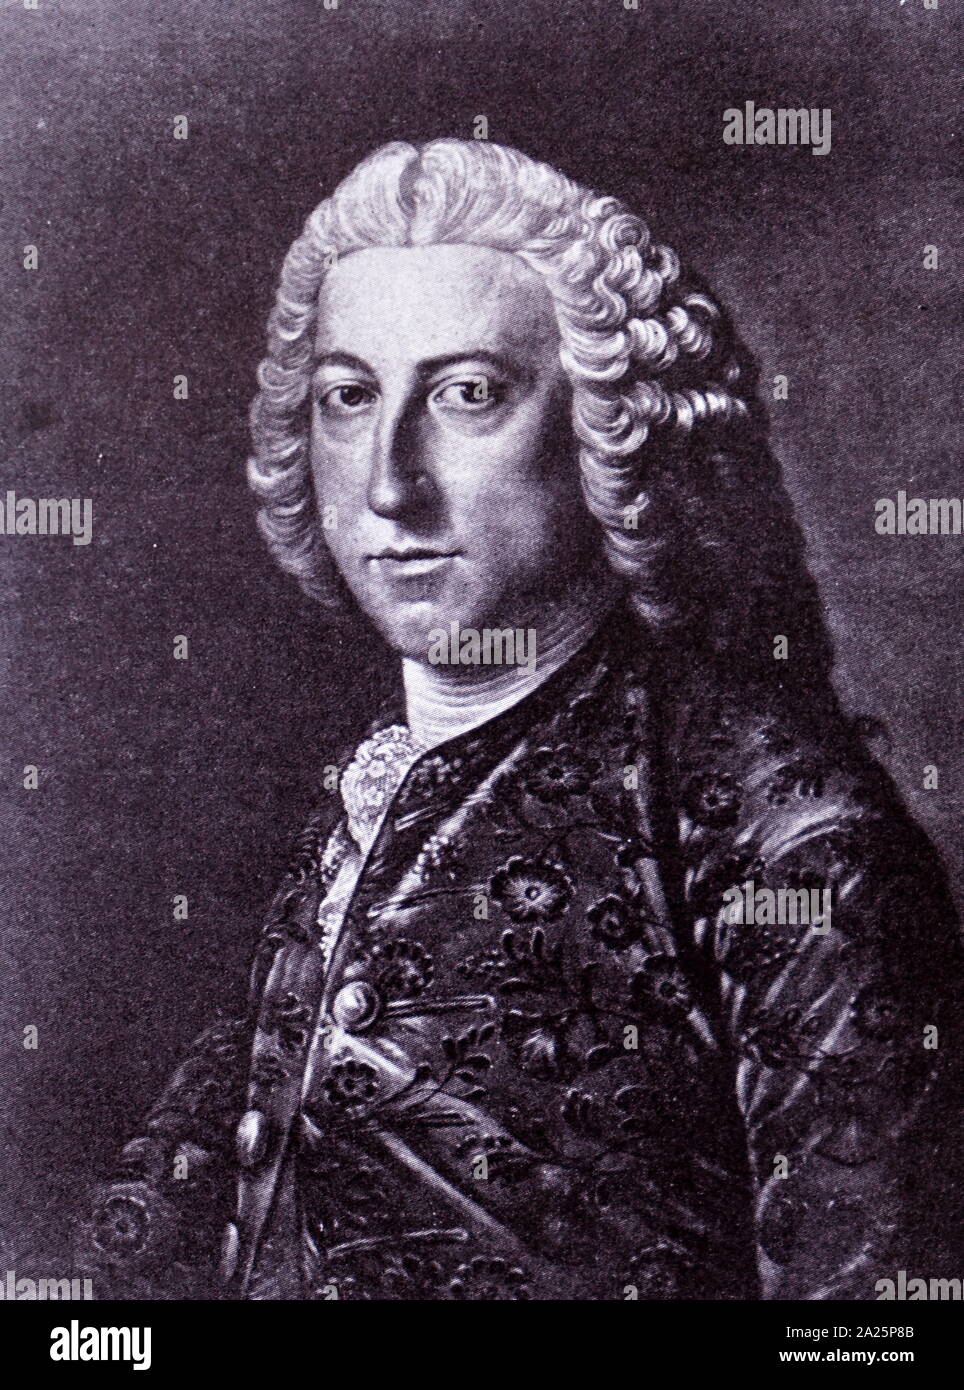 Porträt von William Pitt, 1. Earl of Chatham (1708-1778) ein britischer Staatsmann und ehemaliger Premierminister von Großbritannien. Stockfoto